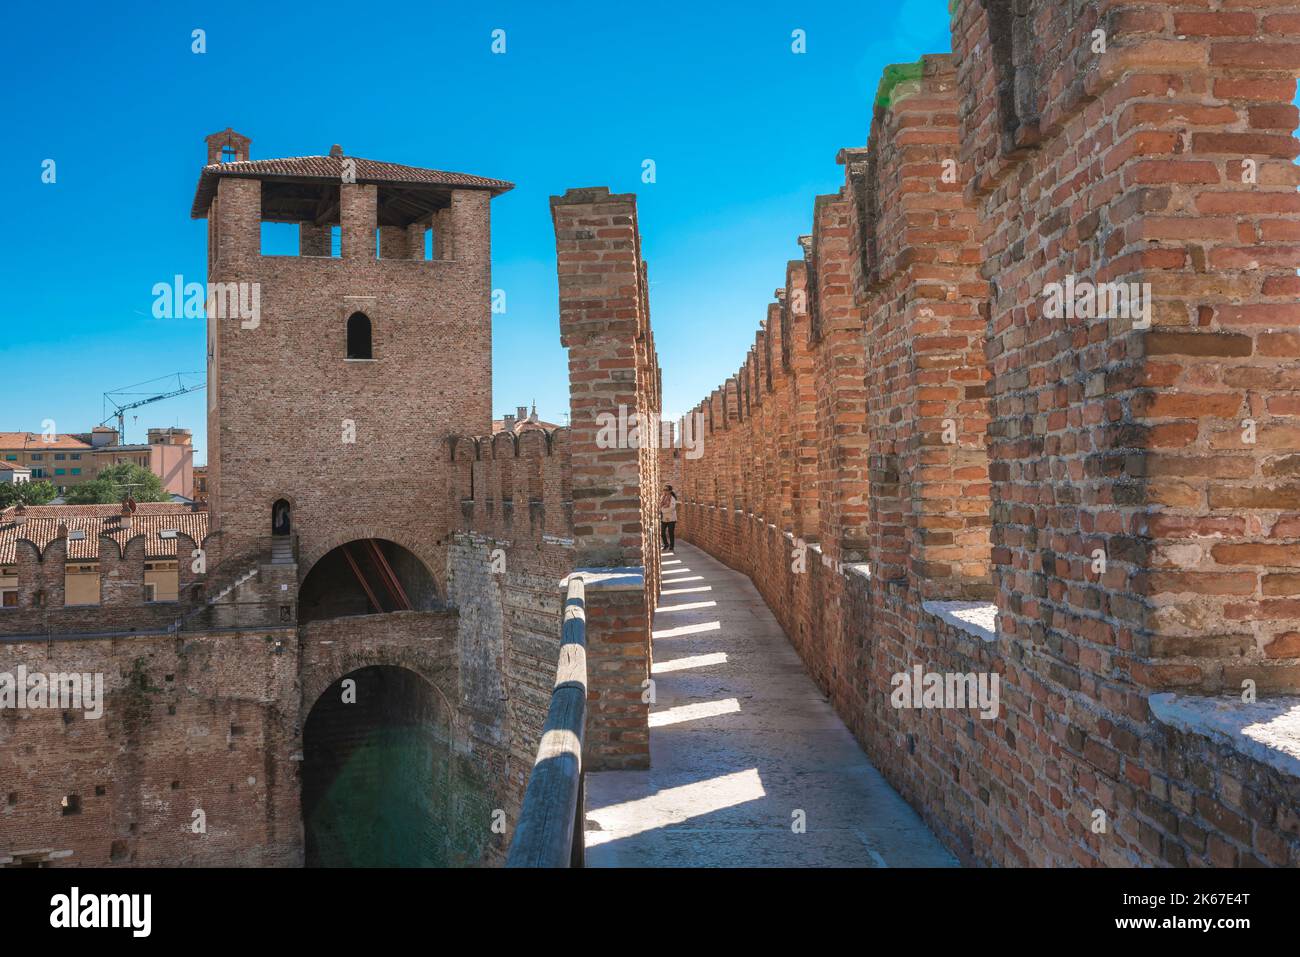 Mittelalterliche Stadtburg, Blick im Sommer auf den Weg zwischen den Zinnen der südöstlichen Mauer des 14.. Jahrhunderts Castelvecchio, Verona, Italien Stockfoto